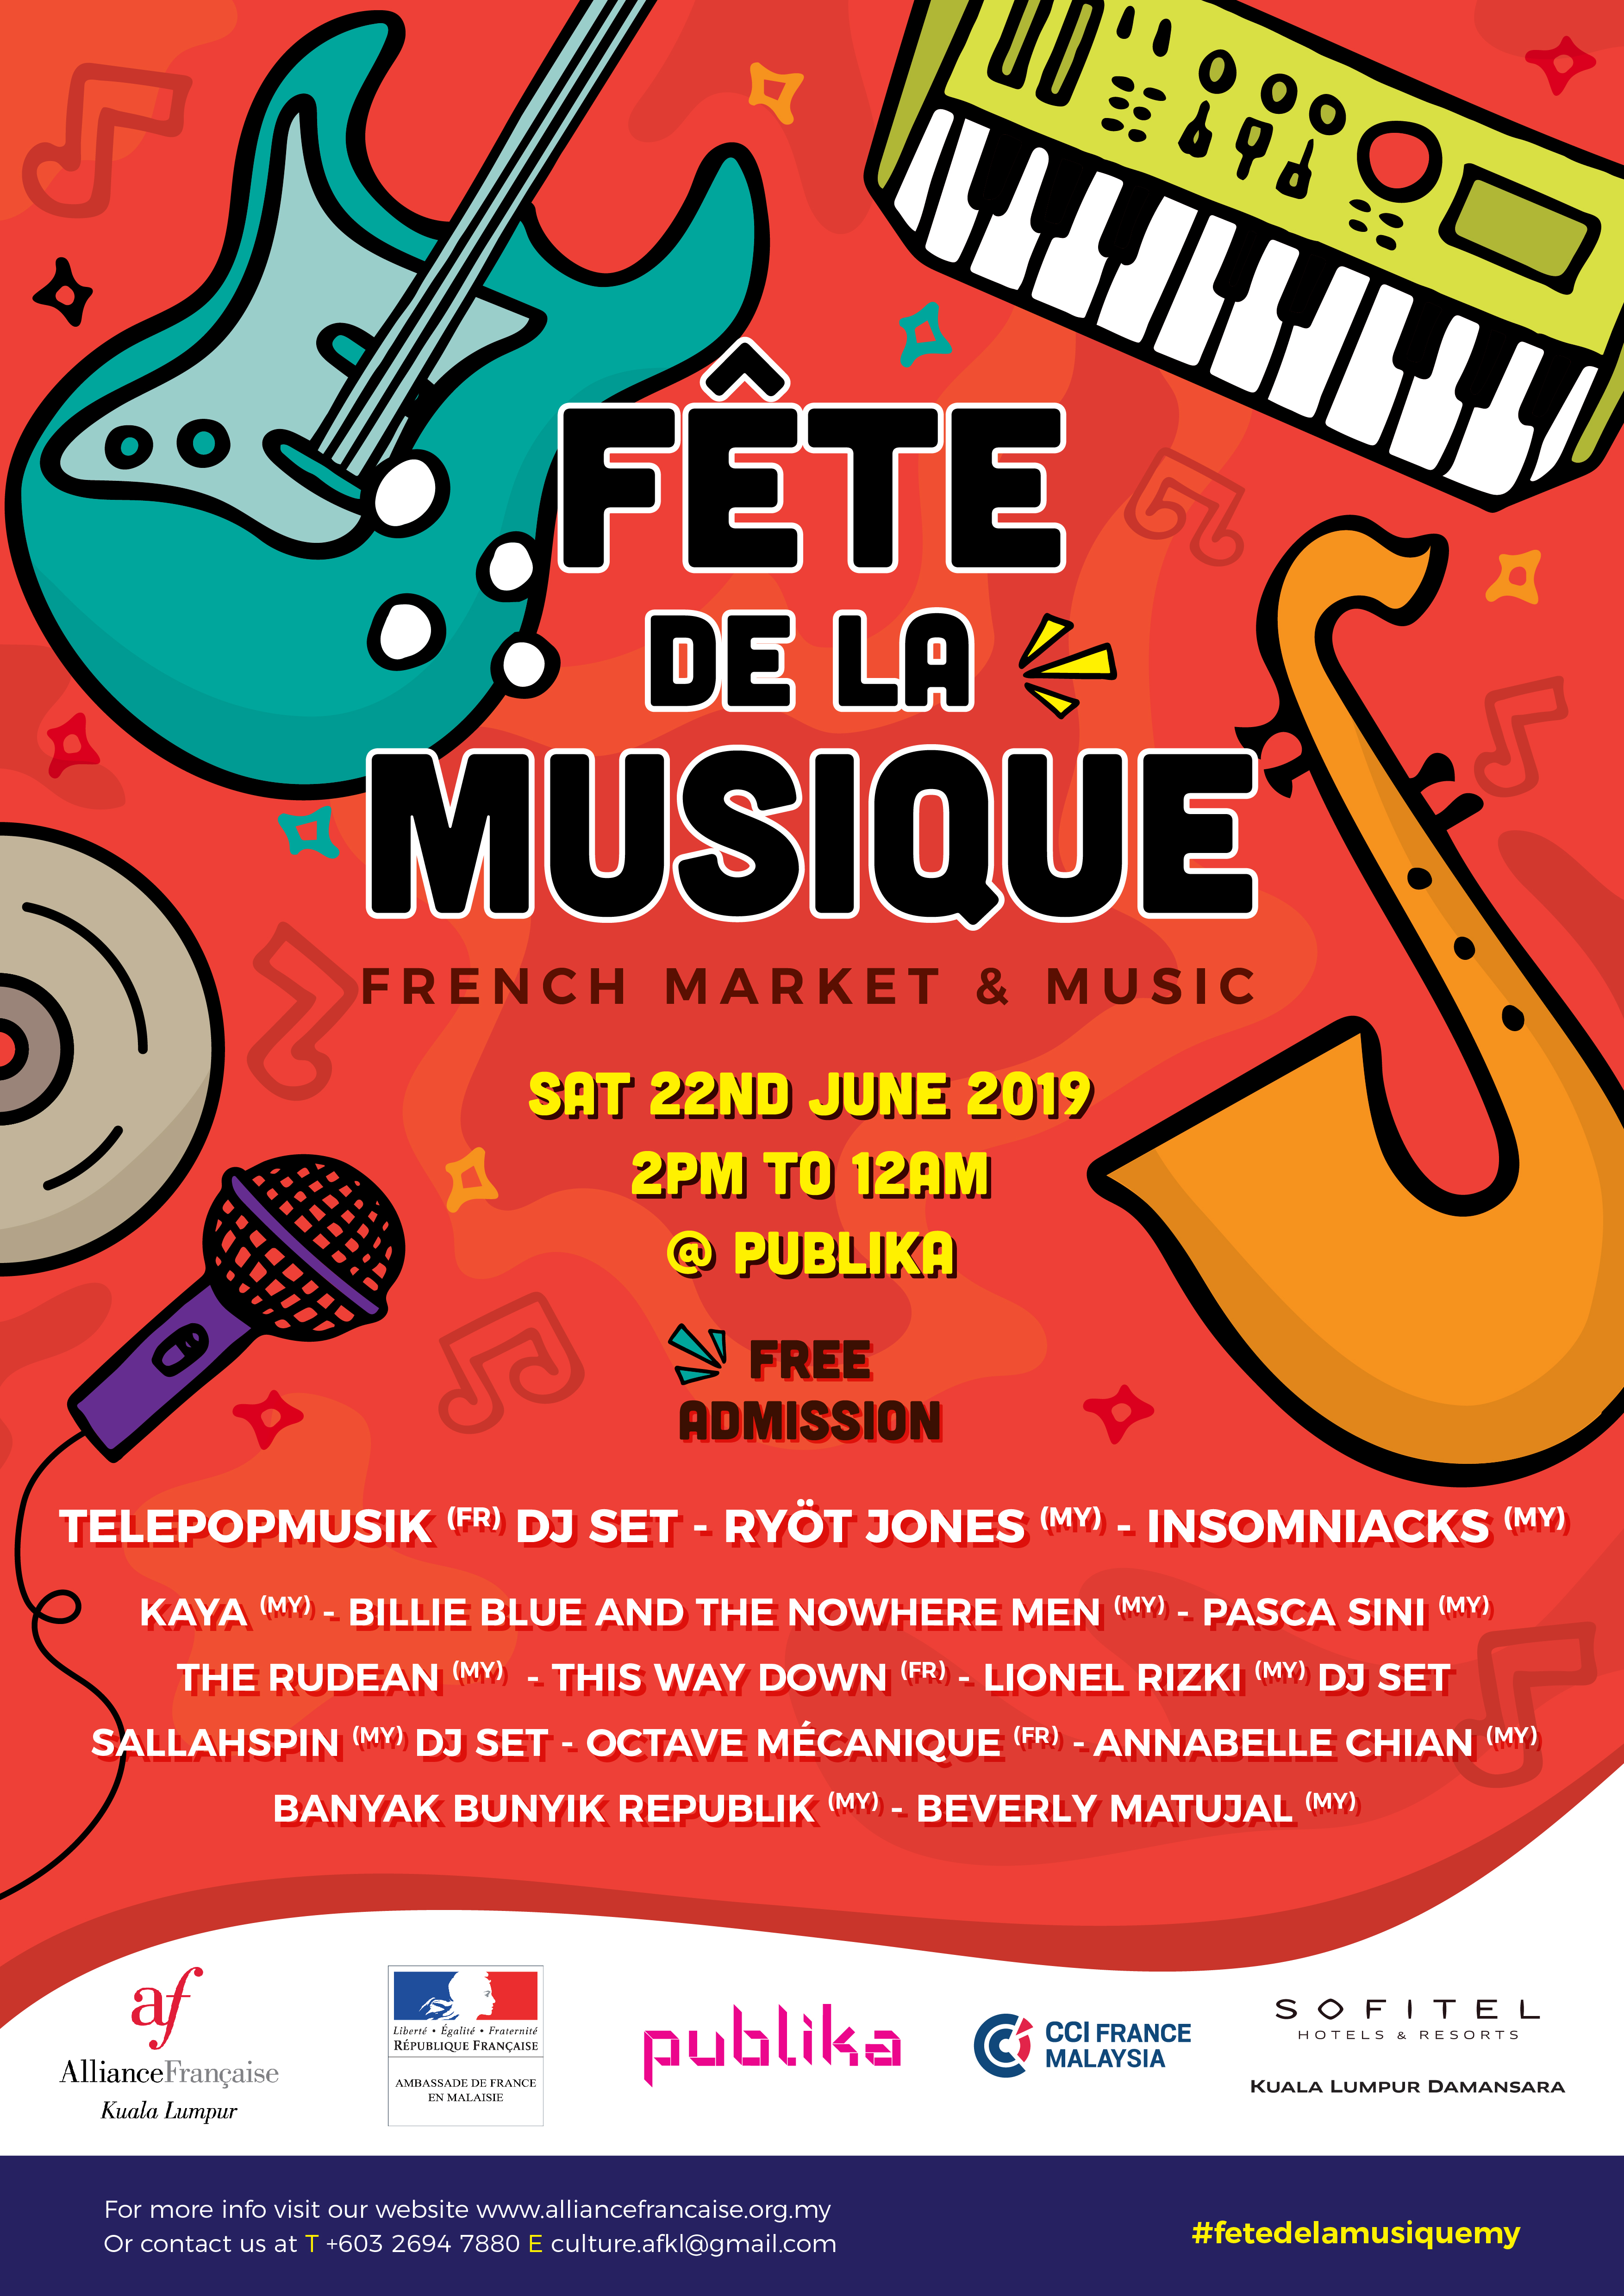 Catch Telepopmusik At Fete De La Musique Publika This Weekend